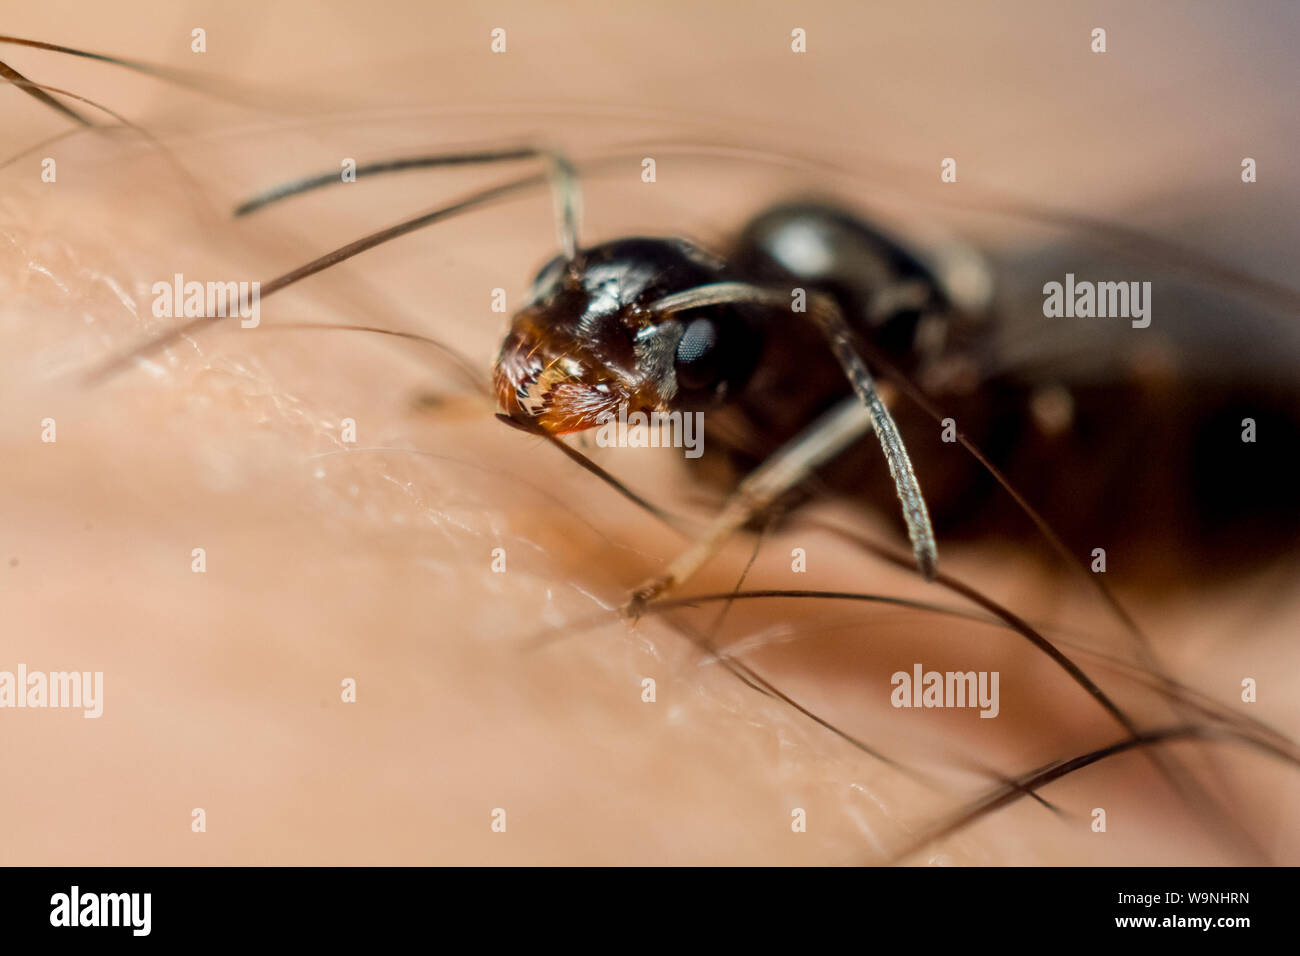 Portrait frontal d'une fourmi noire alate, insecte sur un doigt humain, trouvés dans un jardin tropical au Brésil Banque D'Images